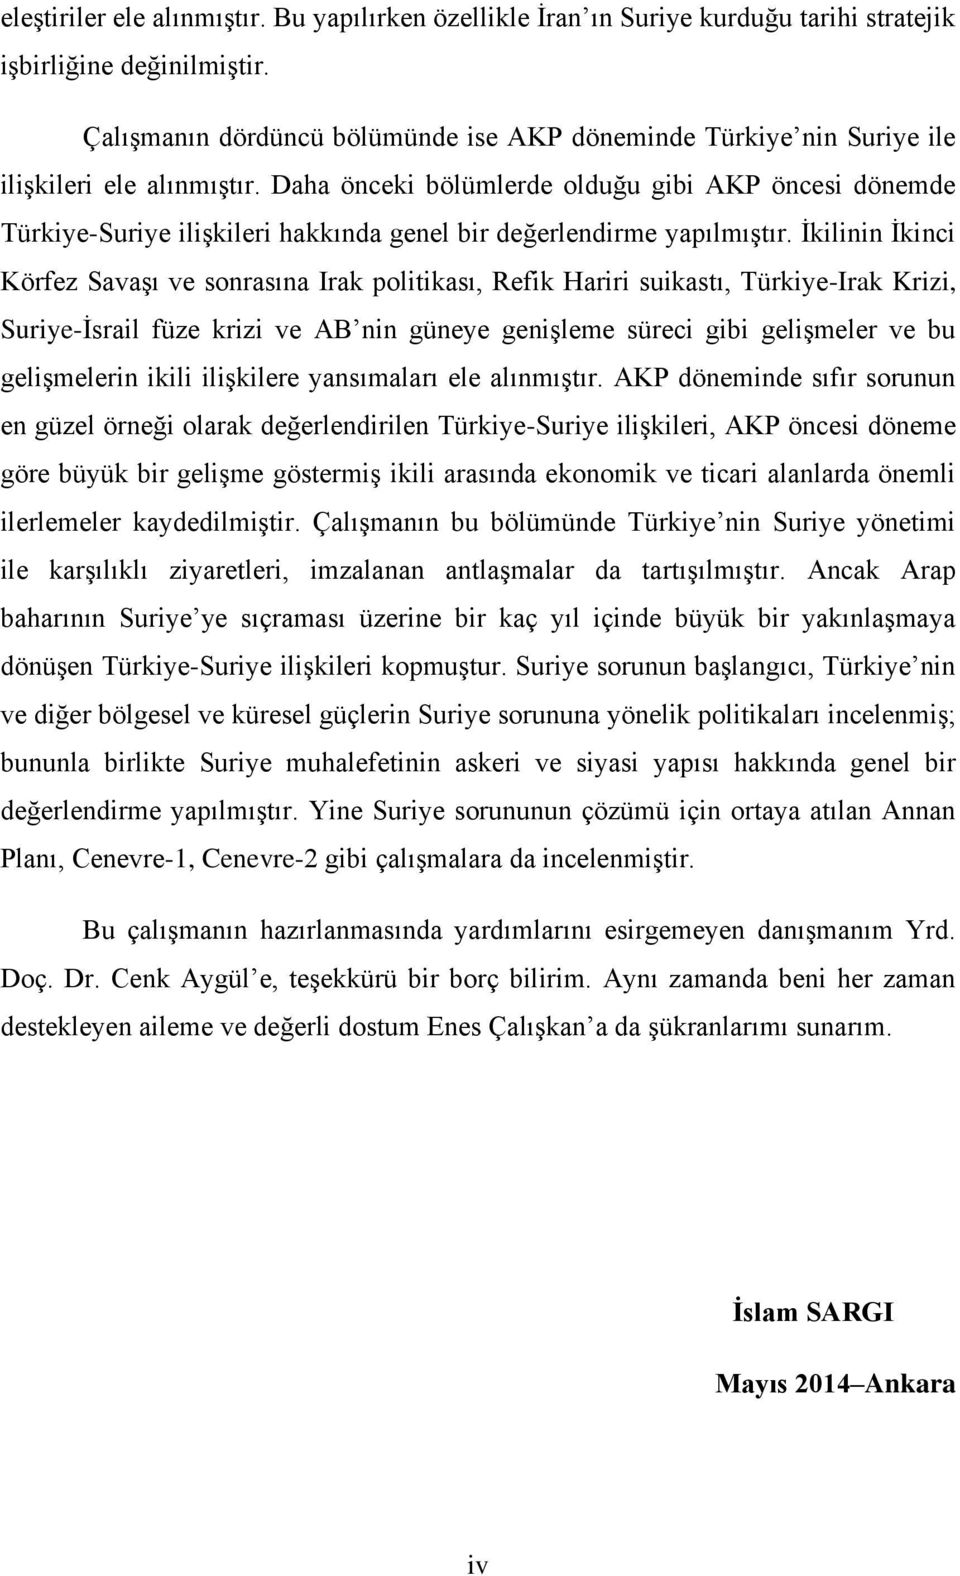 Daha önceki bölümlerde olduğu gibi AKP öncesi dönemde Türkiye-Suriye ilişkileri hakkında genel bir değerlendirme yapılmıştır.